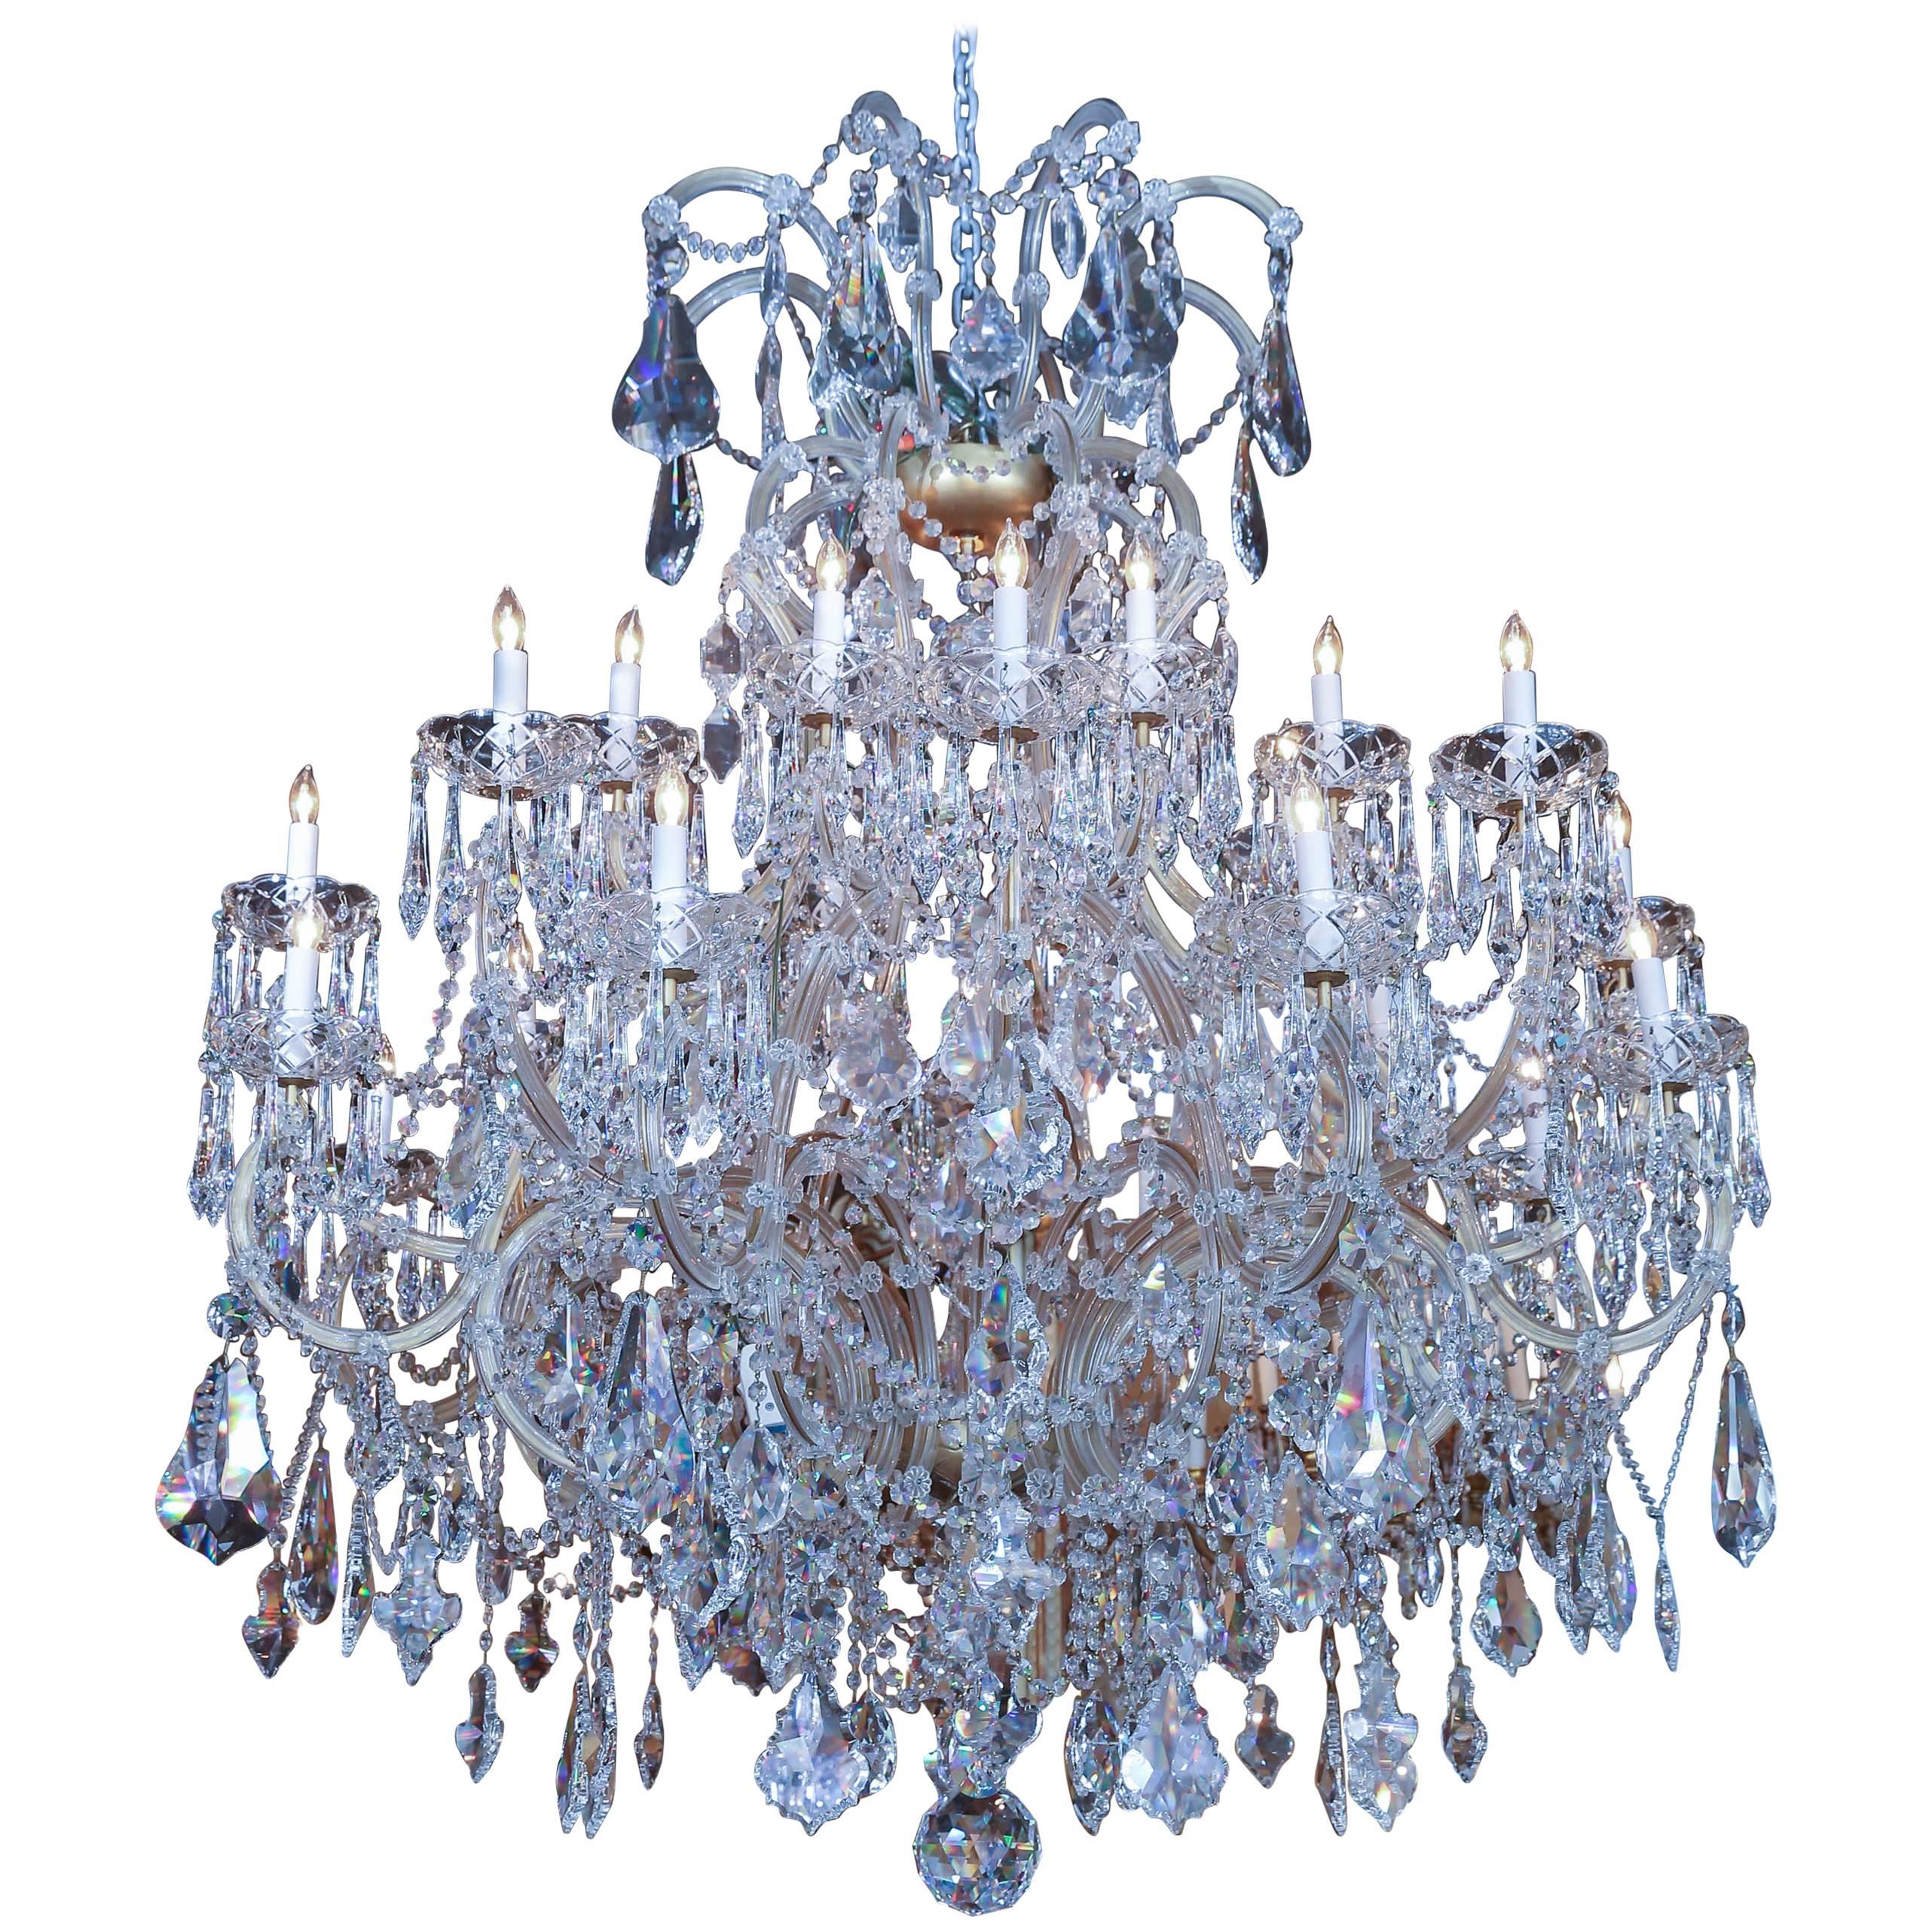 Large Swarovski Crystal Chandelier with 24 Lights